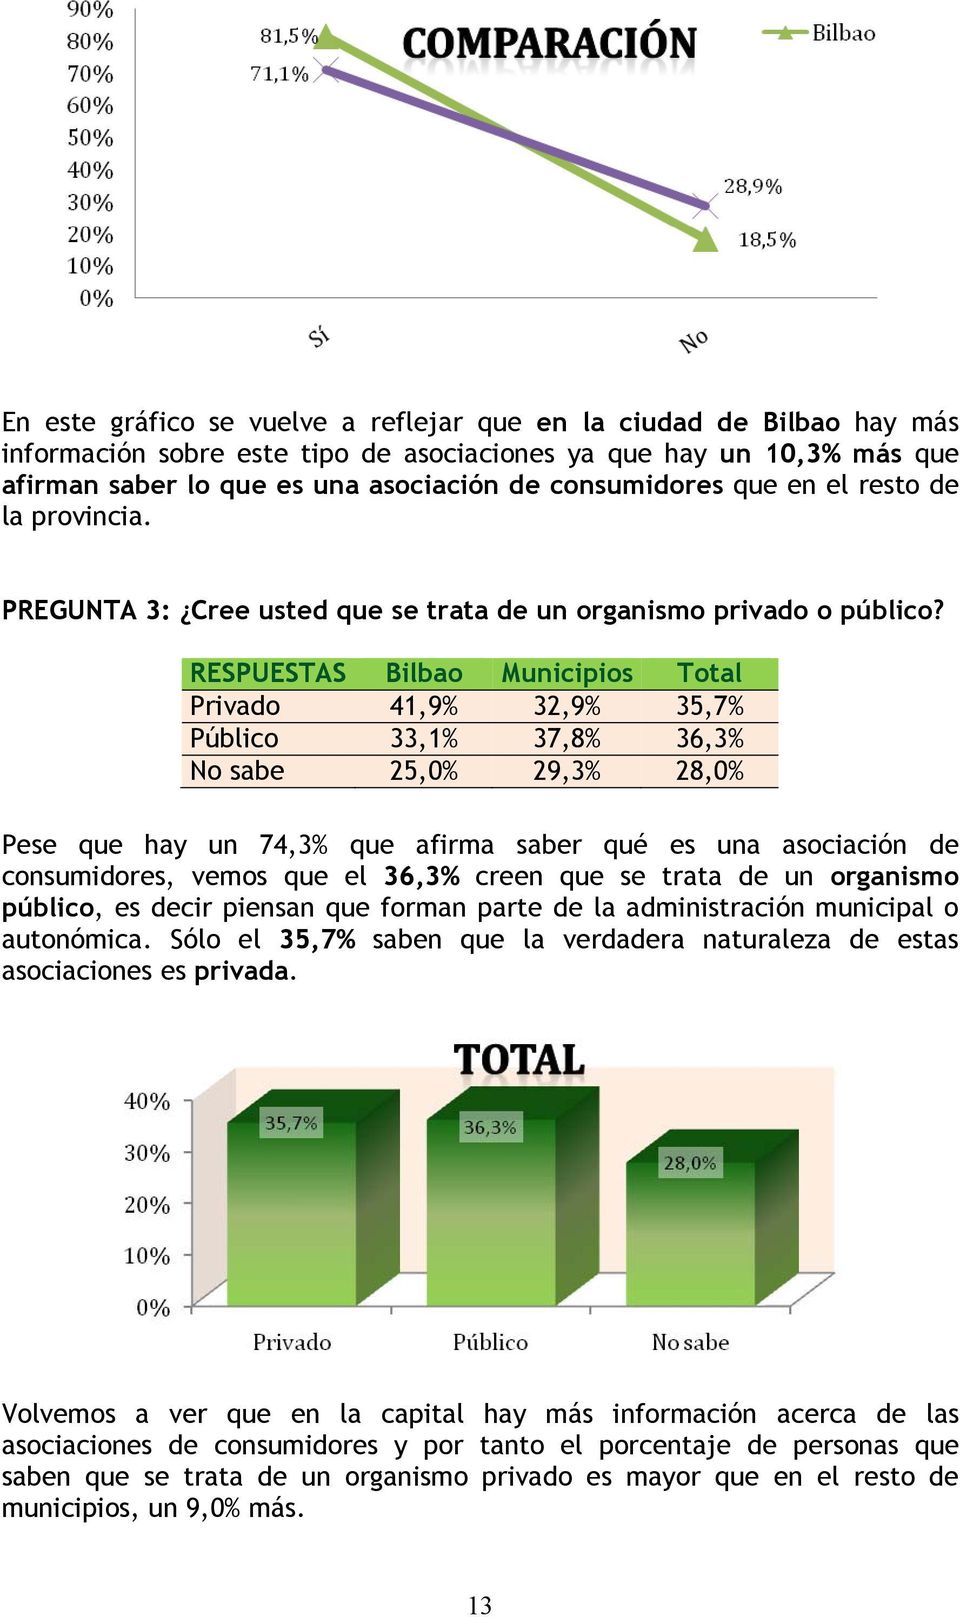 RESPUESTAS Bilbao Municipios Total Privado 41,9% 32,9% 35,7% Público 33,1% 37,8% 36,3% No sabe 25,0% 29,3% 28,0% Pese que hay un 74,3% que afirma saber qué es una asociación de consumidores, vemos